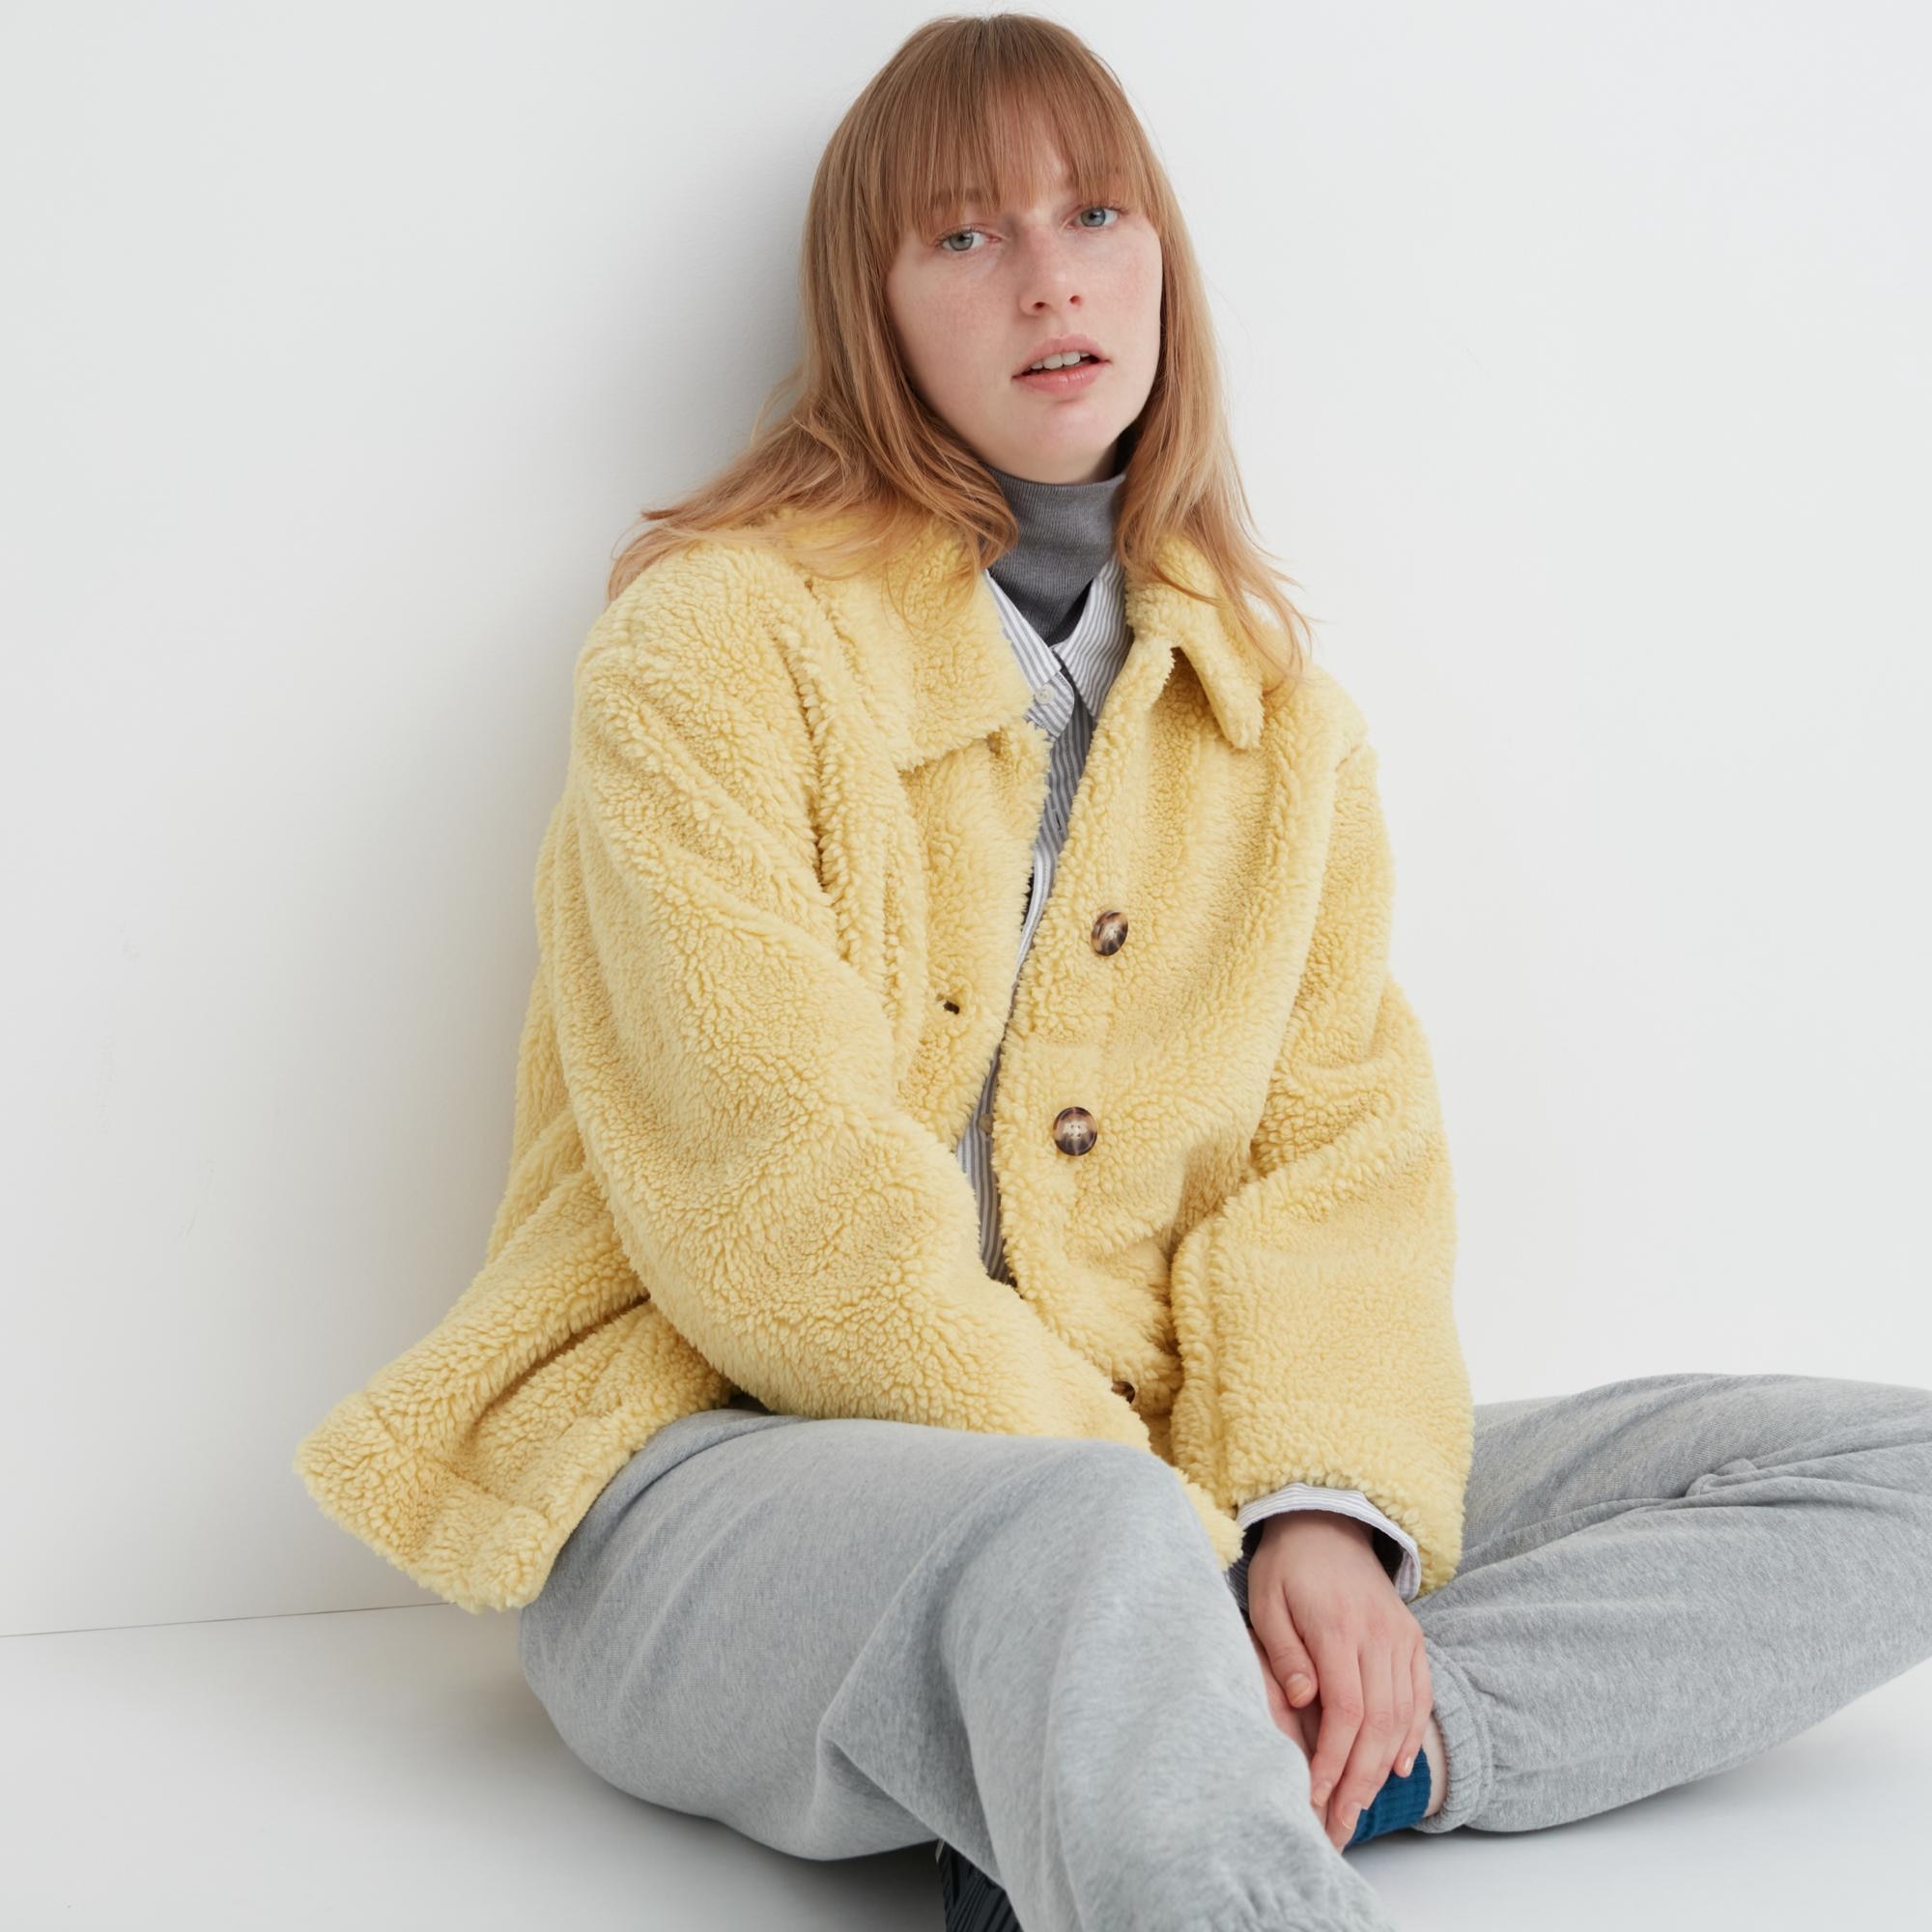 IZYJOY Women Warm Fleece Lined … curated on LTK